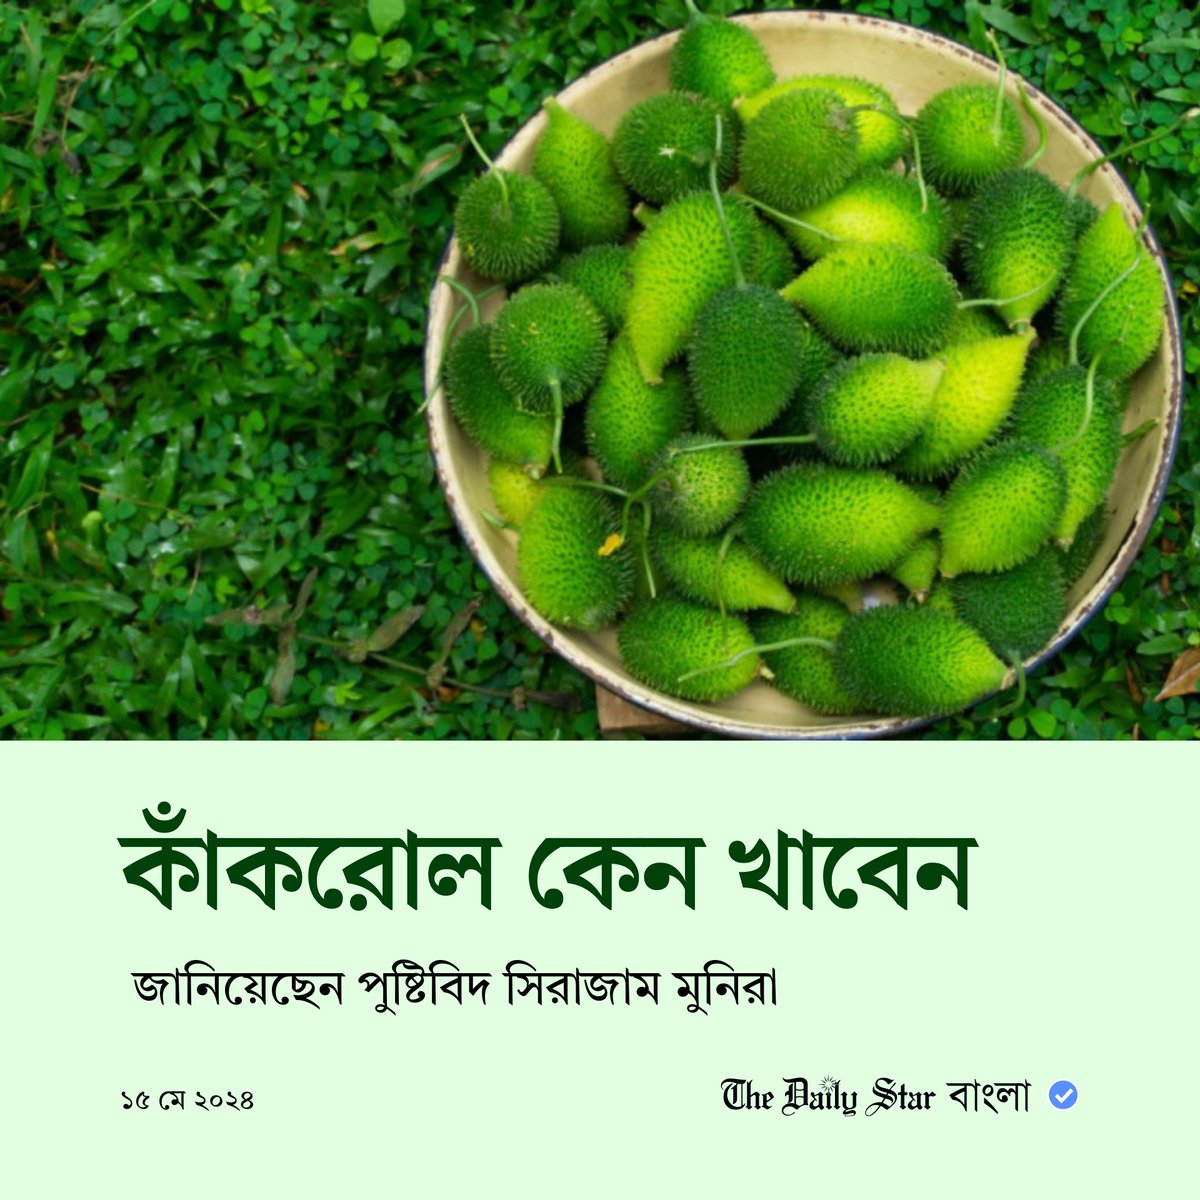 বিস্তারিতঃ bangla.thedailystar.net/life-living/fo…

#Health #LifeStyleNews #BanglaNews